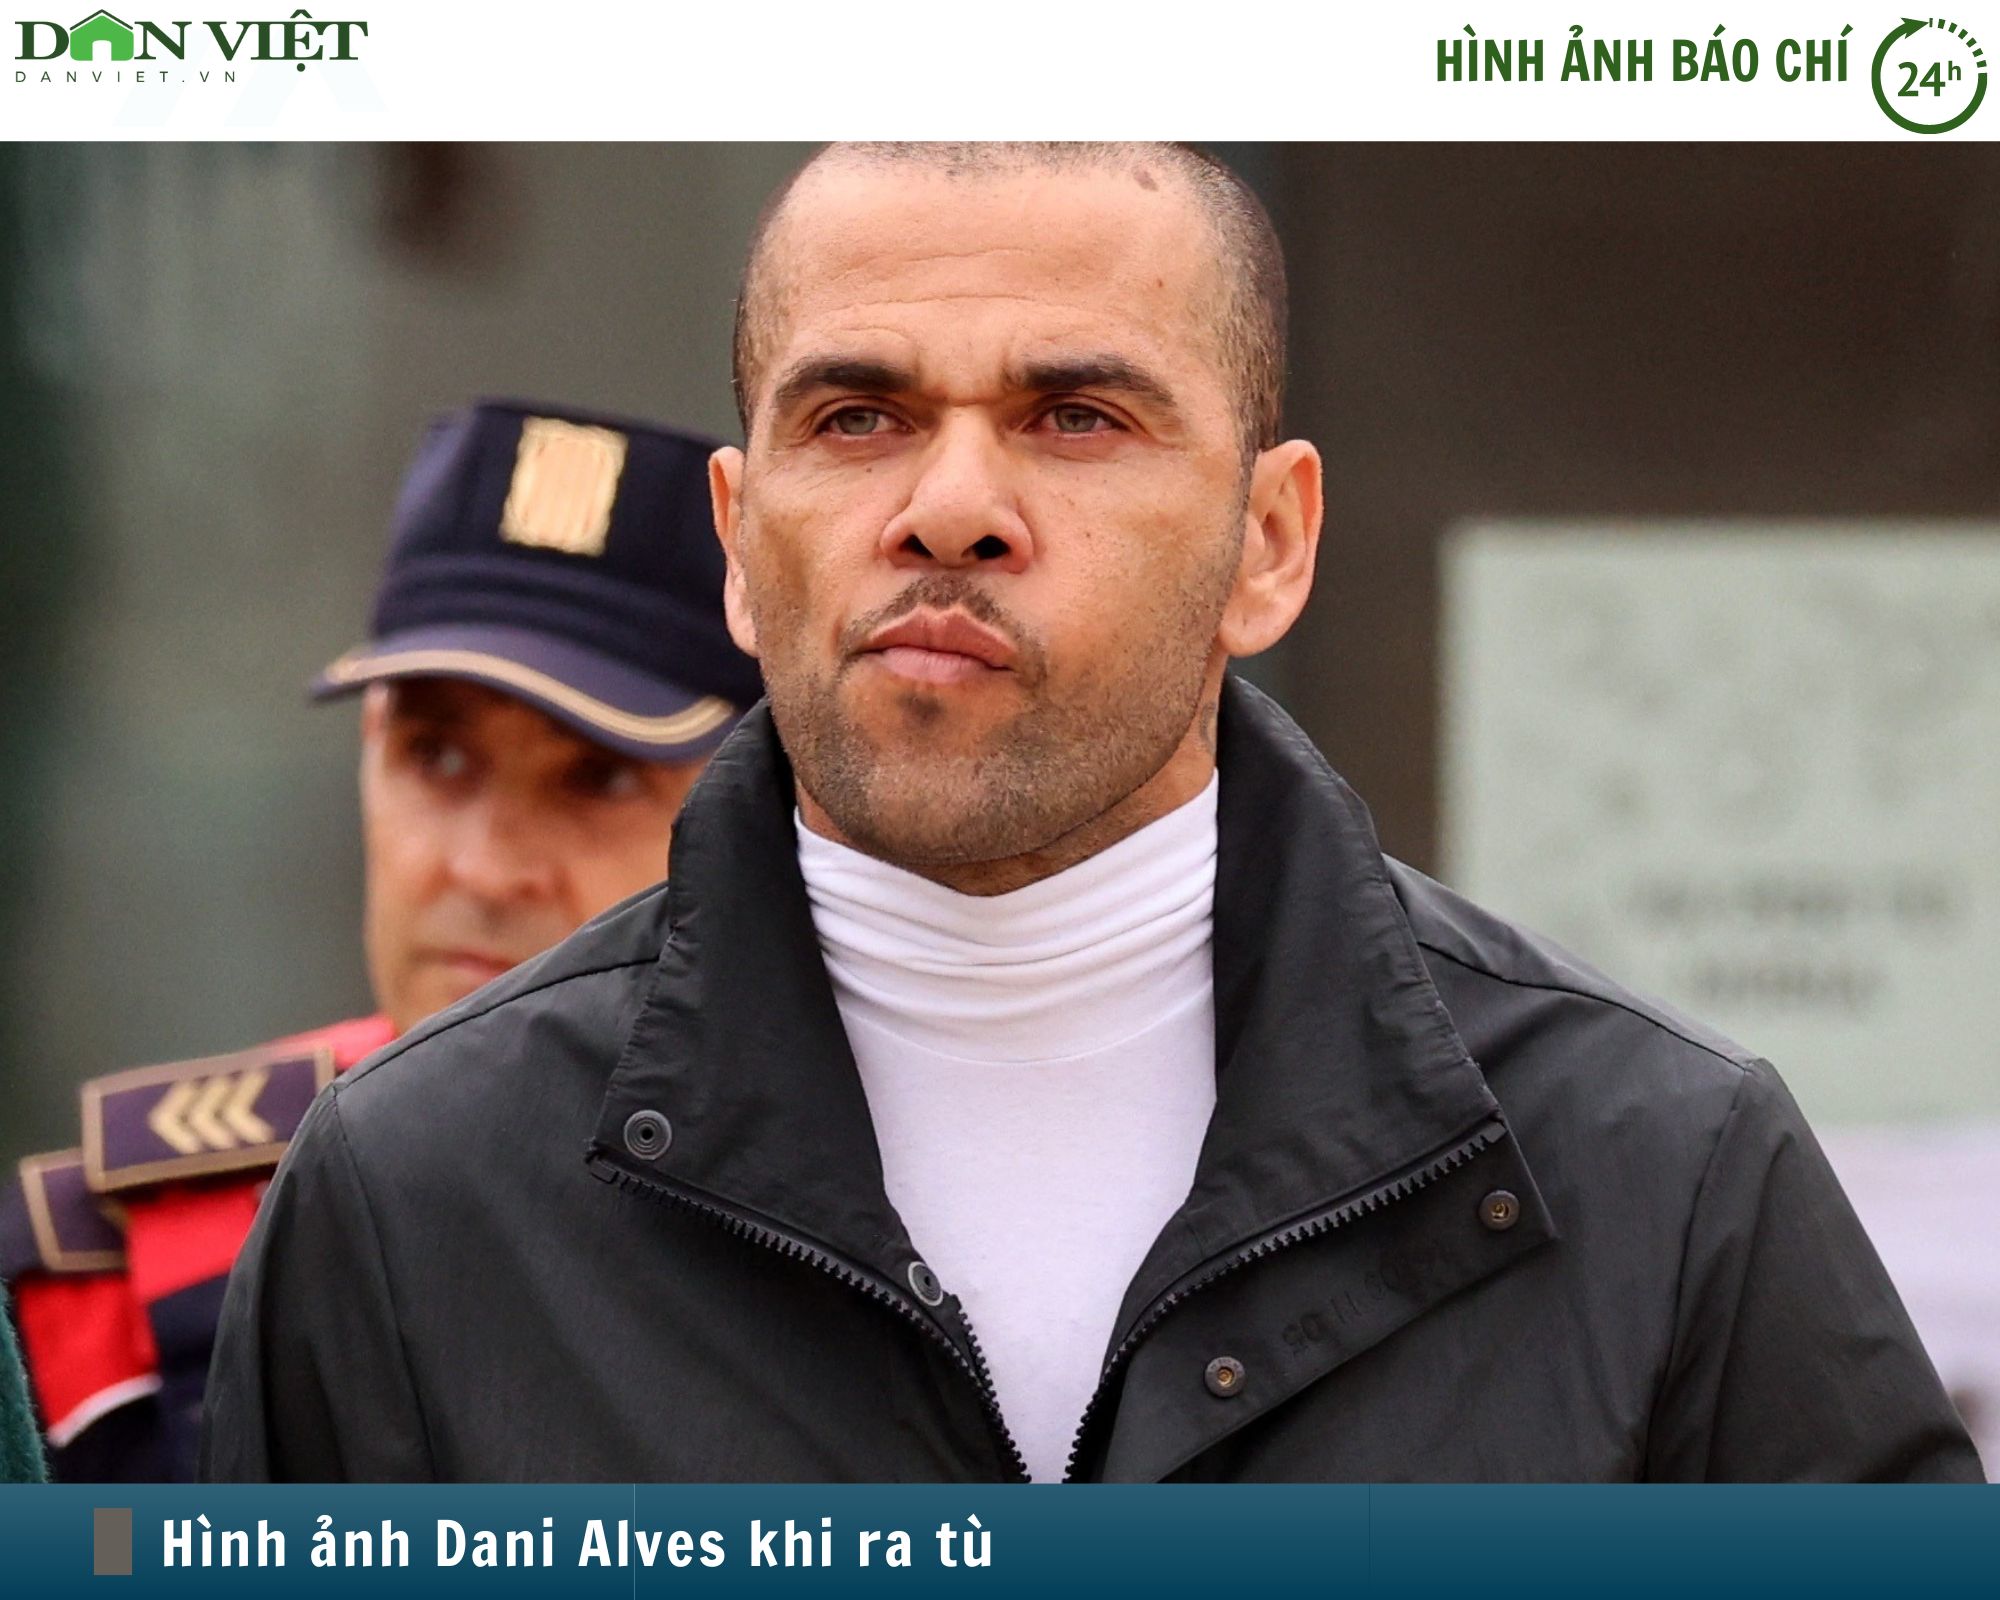 Hình ảnh báo chí 24h: Gương mặt Dani Alves khi ra tù nhìn như thế nào?- Ảnh 1.